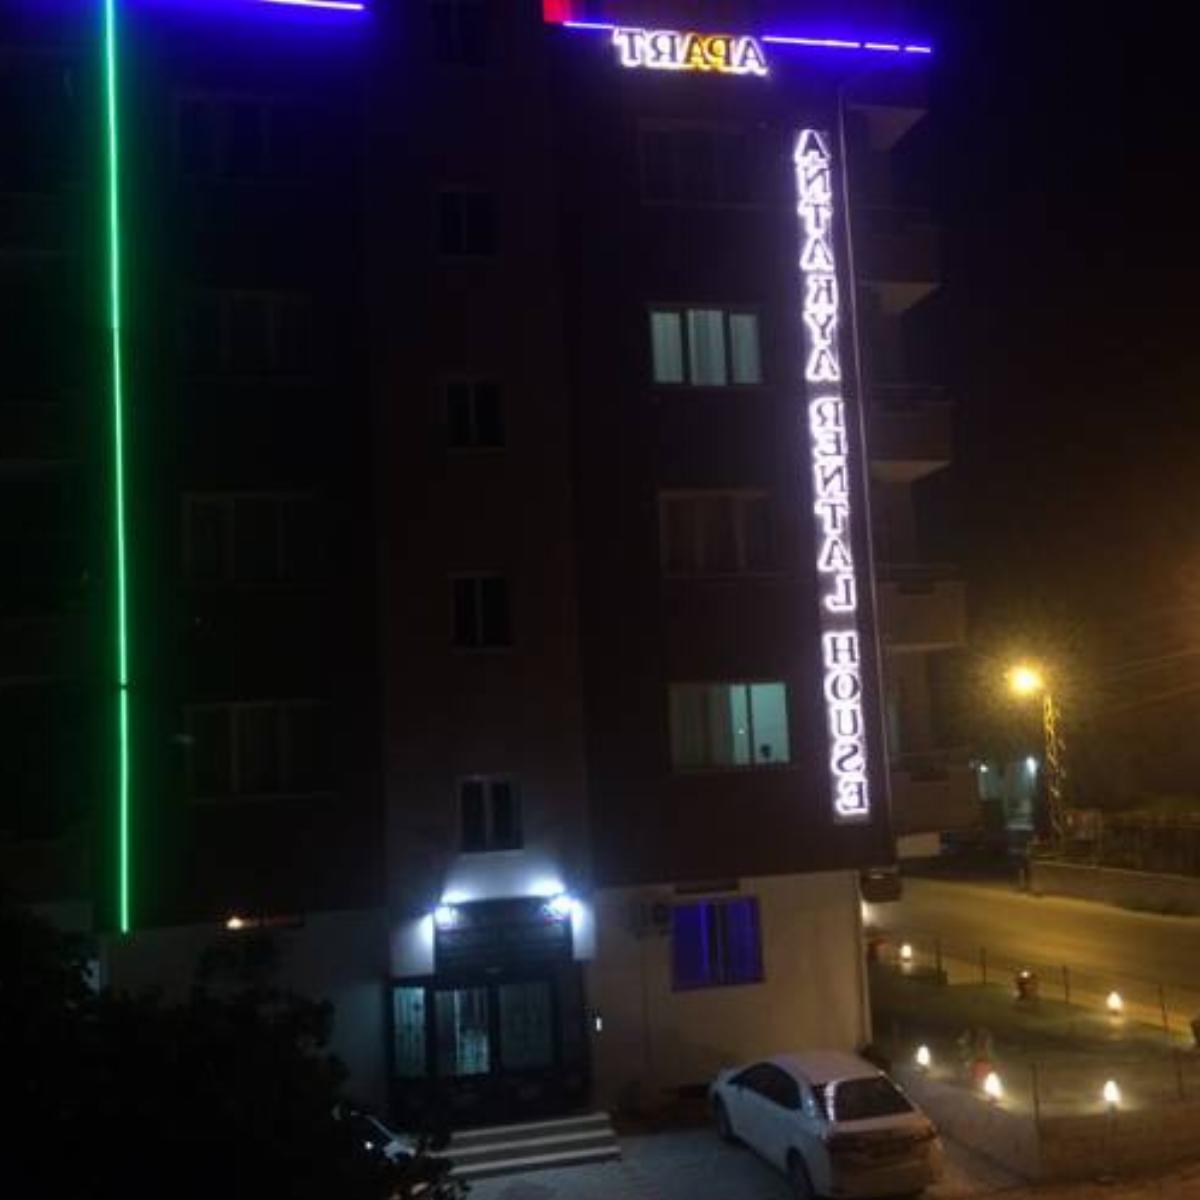 Antakya Rental House Hotel Hatay Turkey